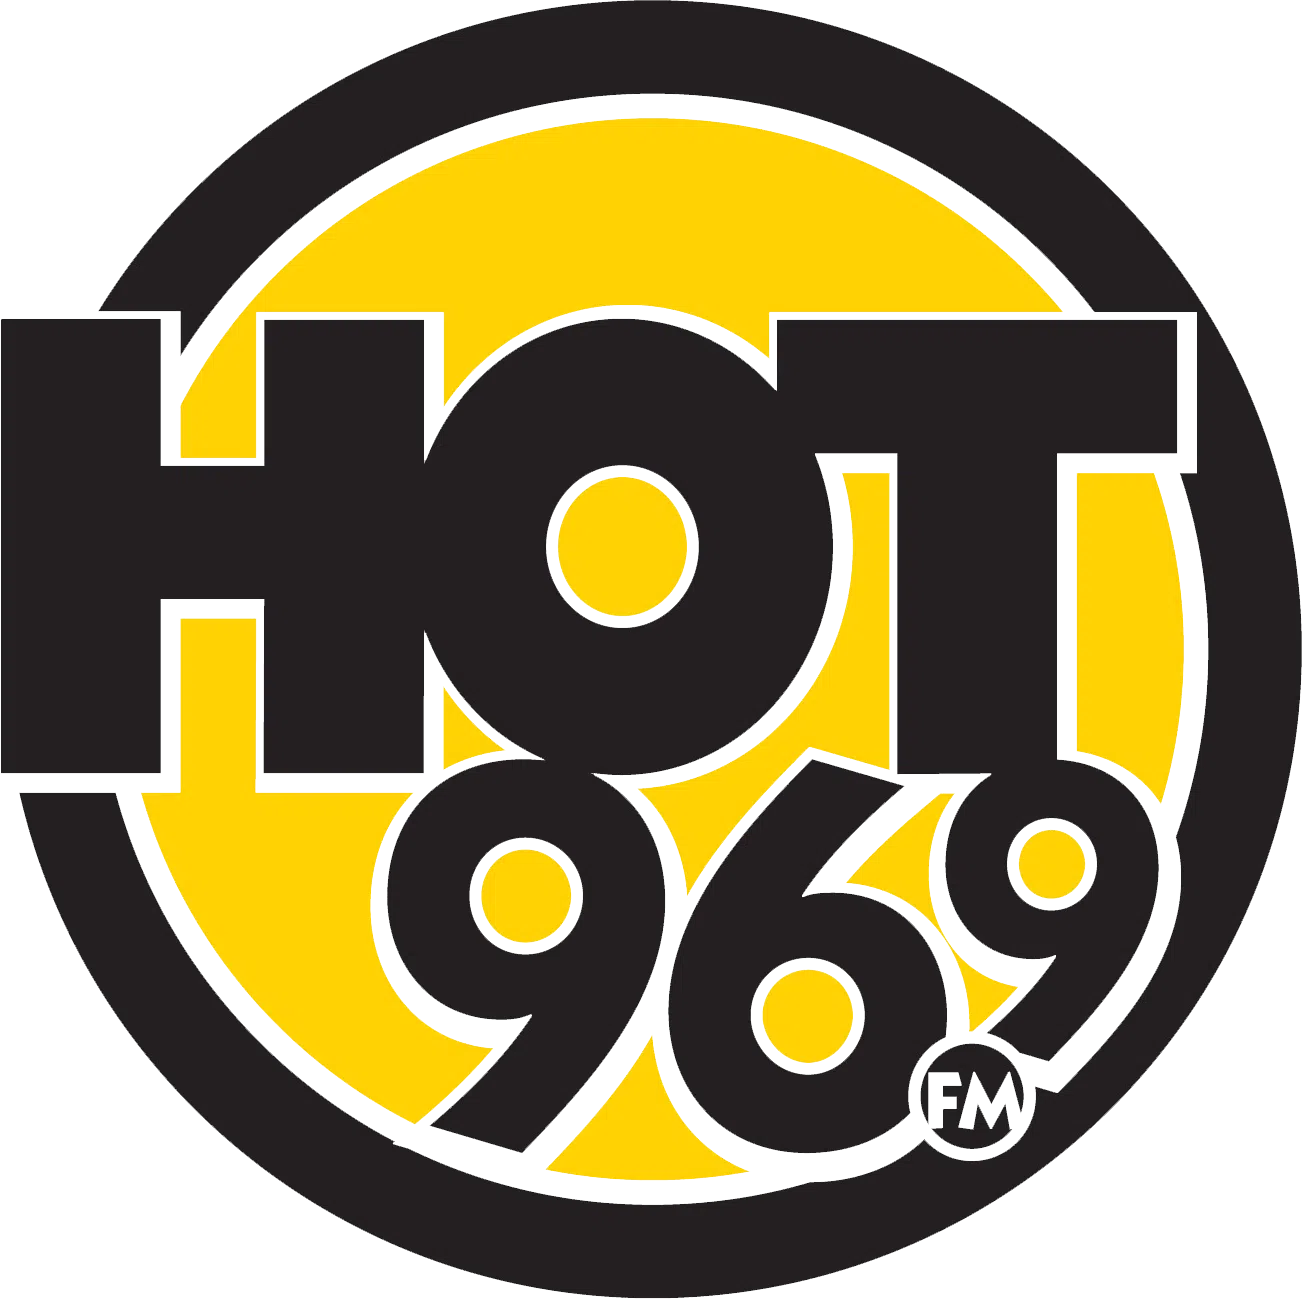 Hot 96.9